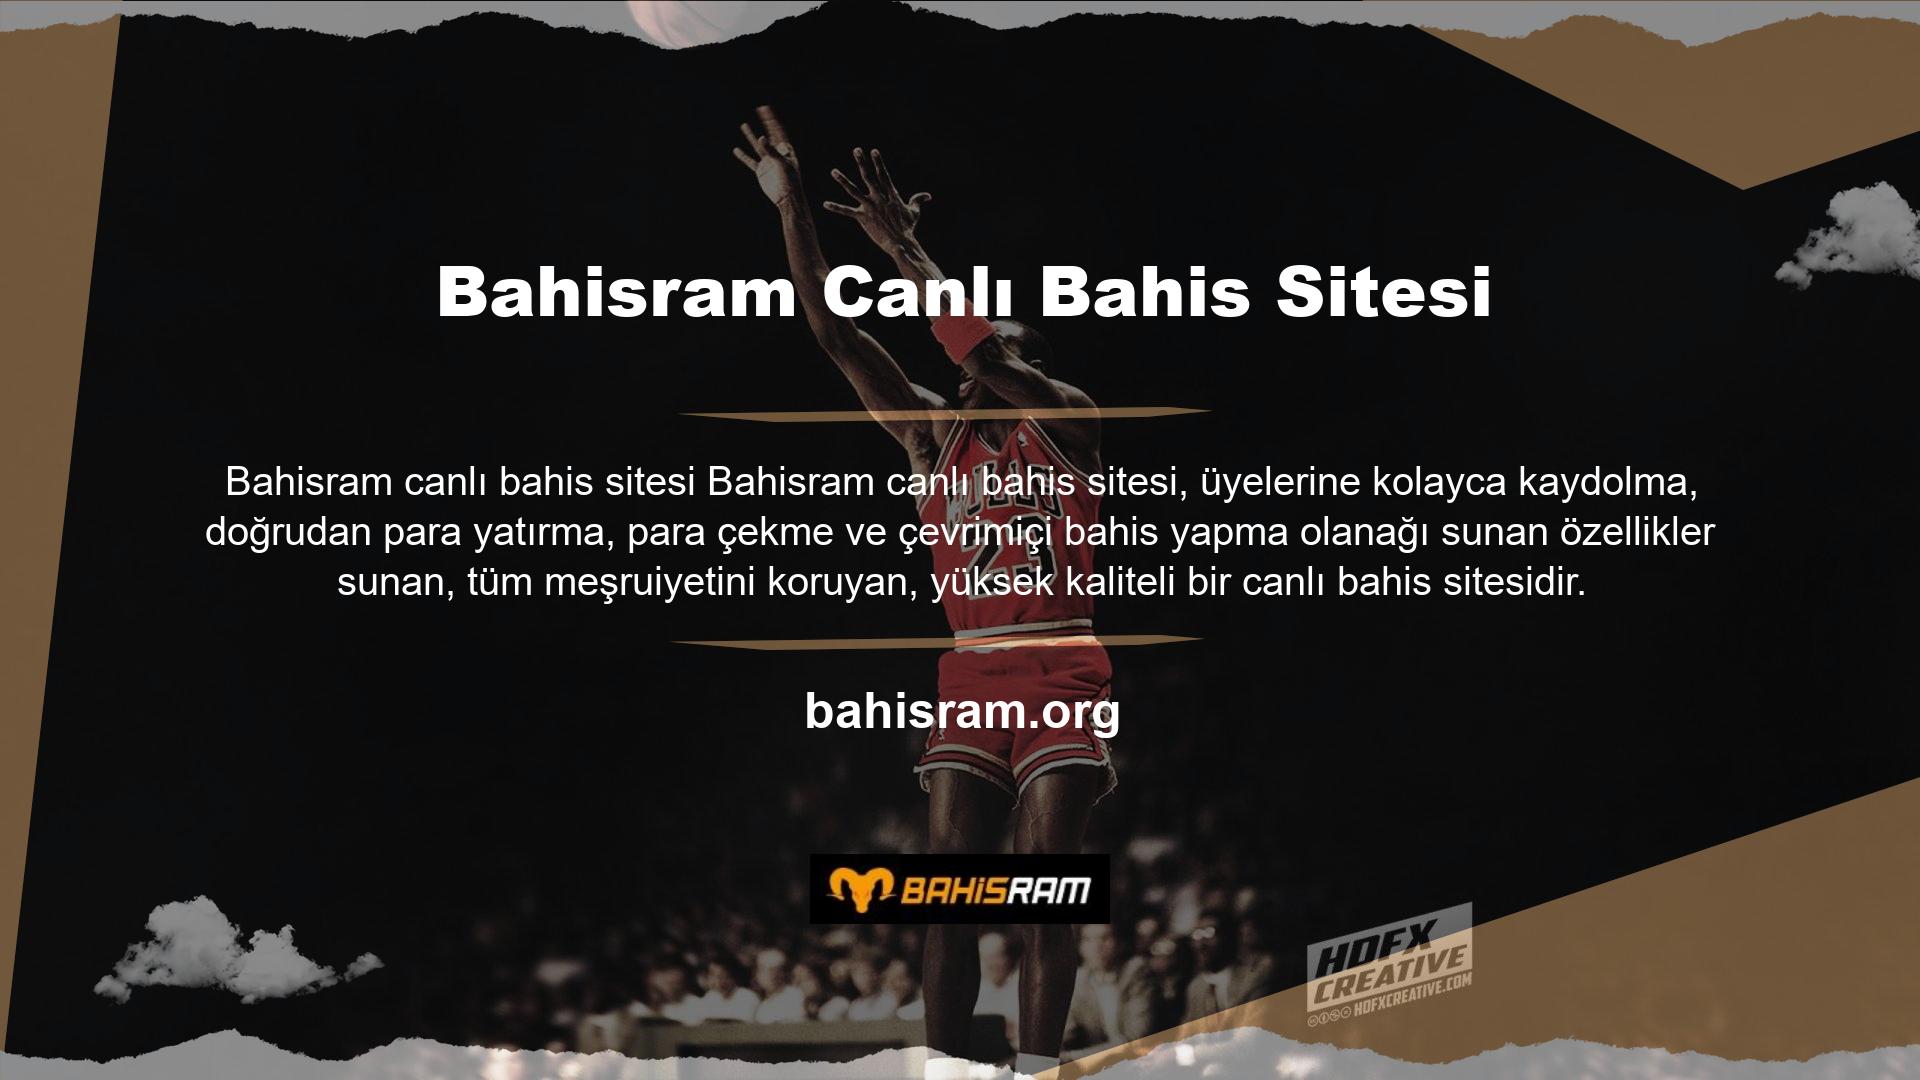 Artık Bahisram Kağıtsız Giriş sitesine online üye olabilirsiniz